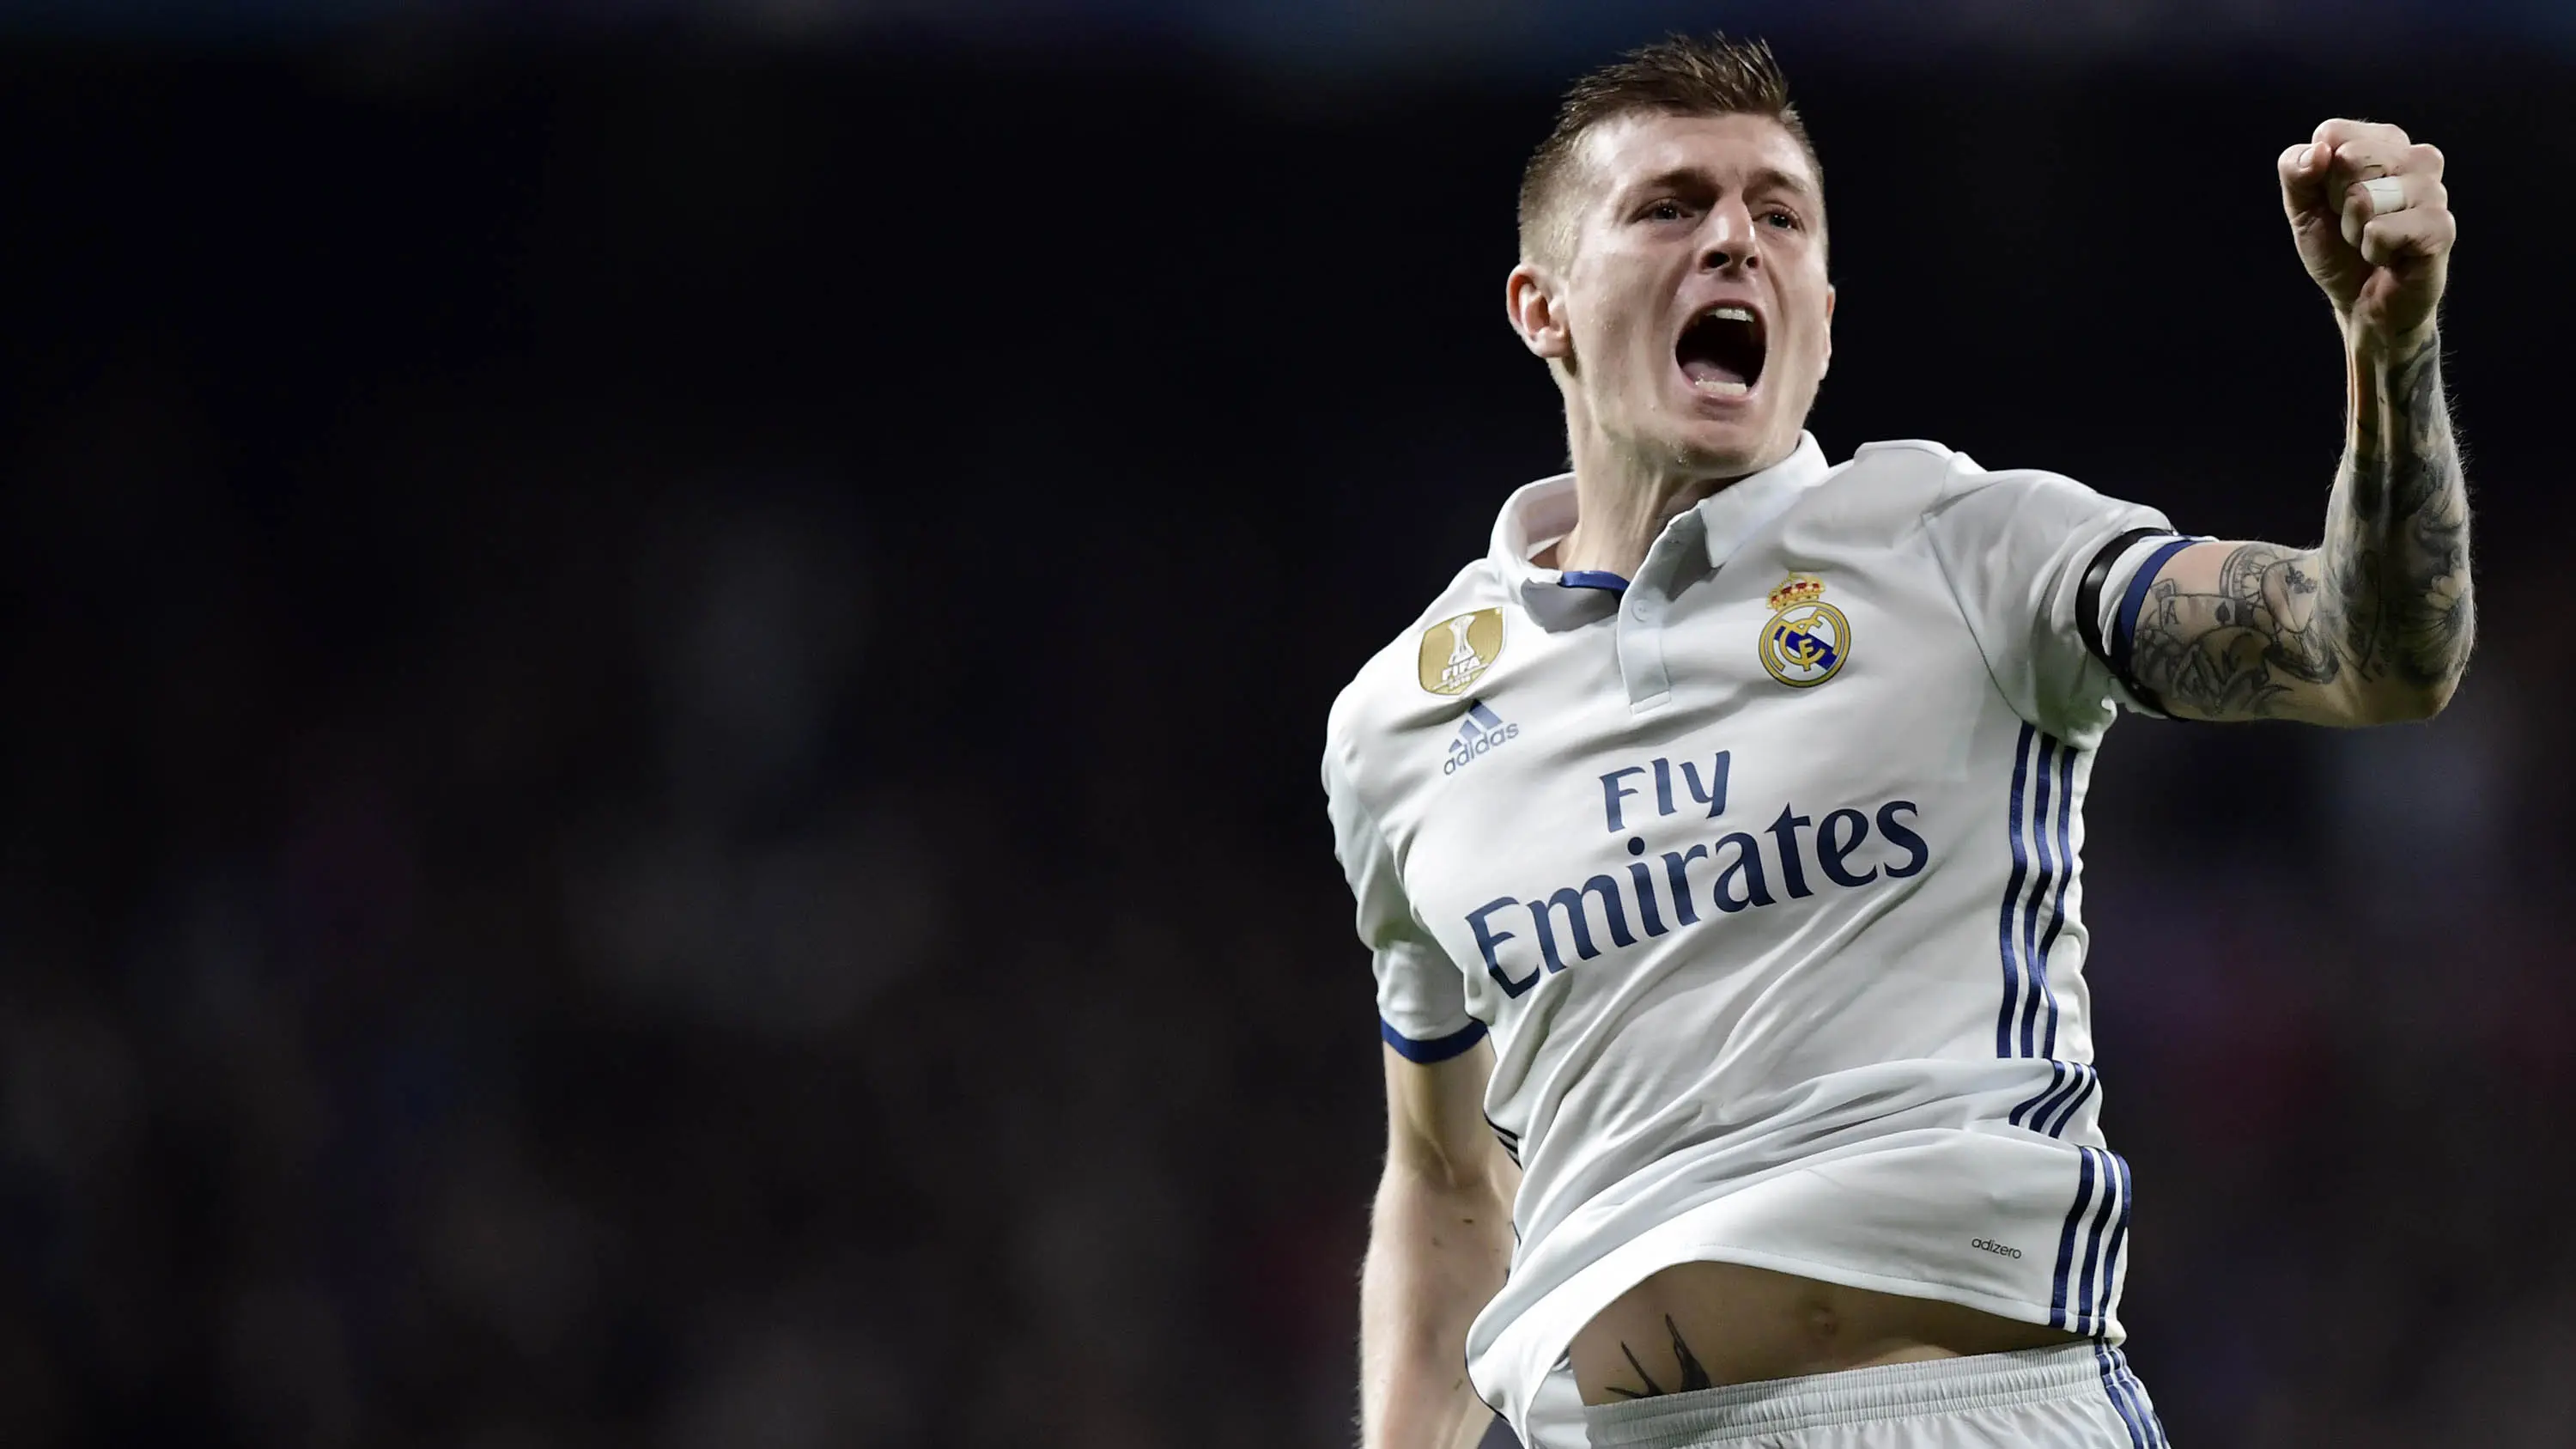 Toni Kroos menuai kesuksesan setelah hijrah ke Real Madrid. (AFP/Javier Soriano)